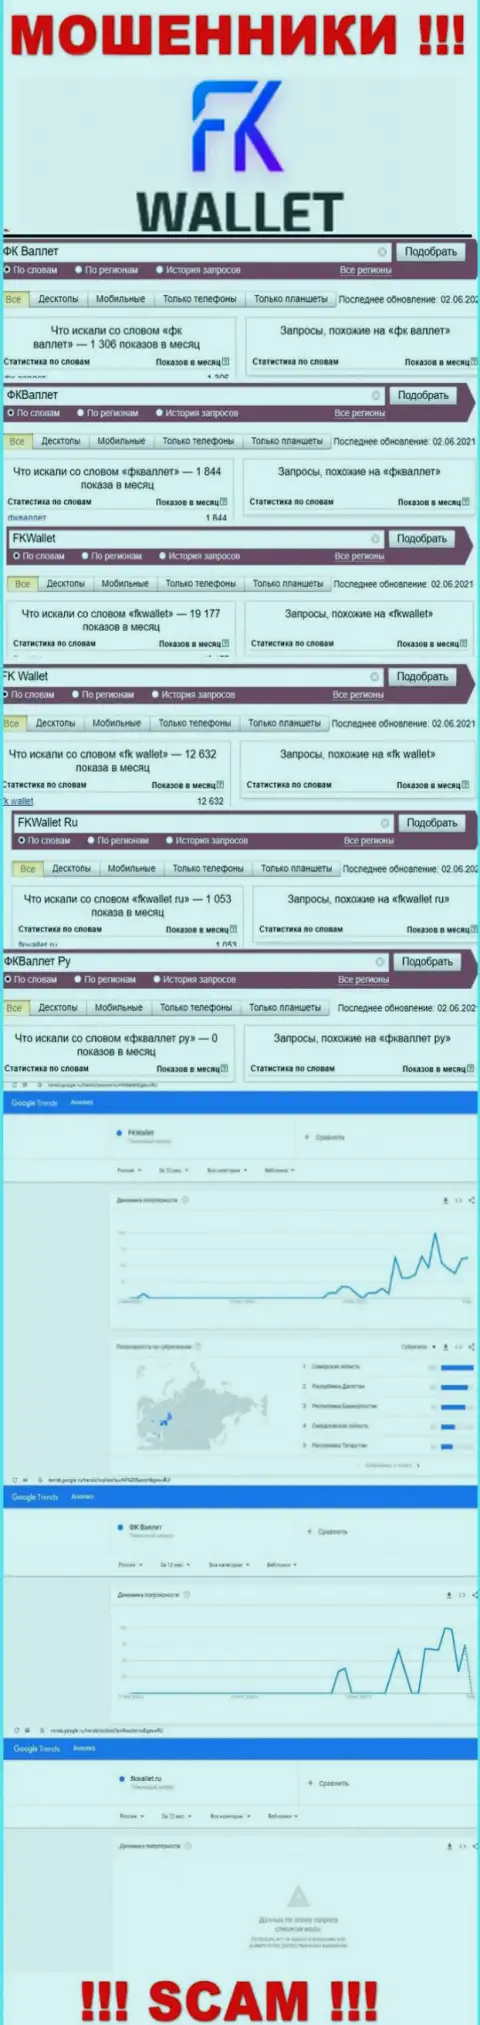 Скриншот статистических показателей запросов по жульнической организации FKWallet Ru